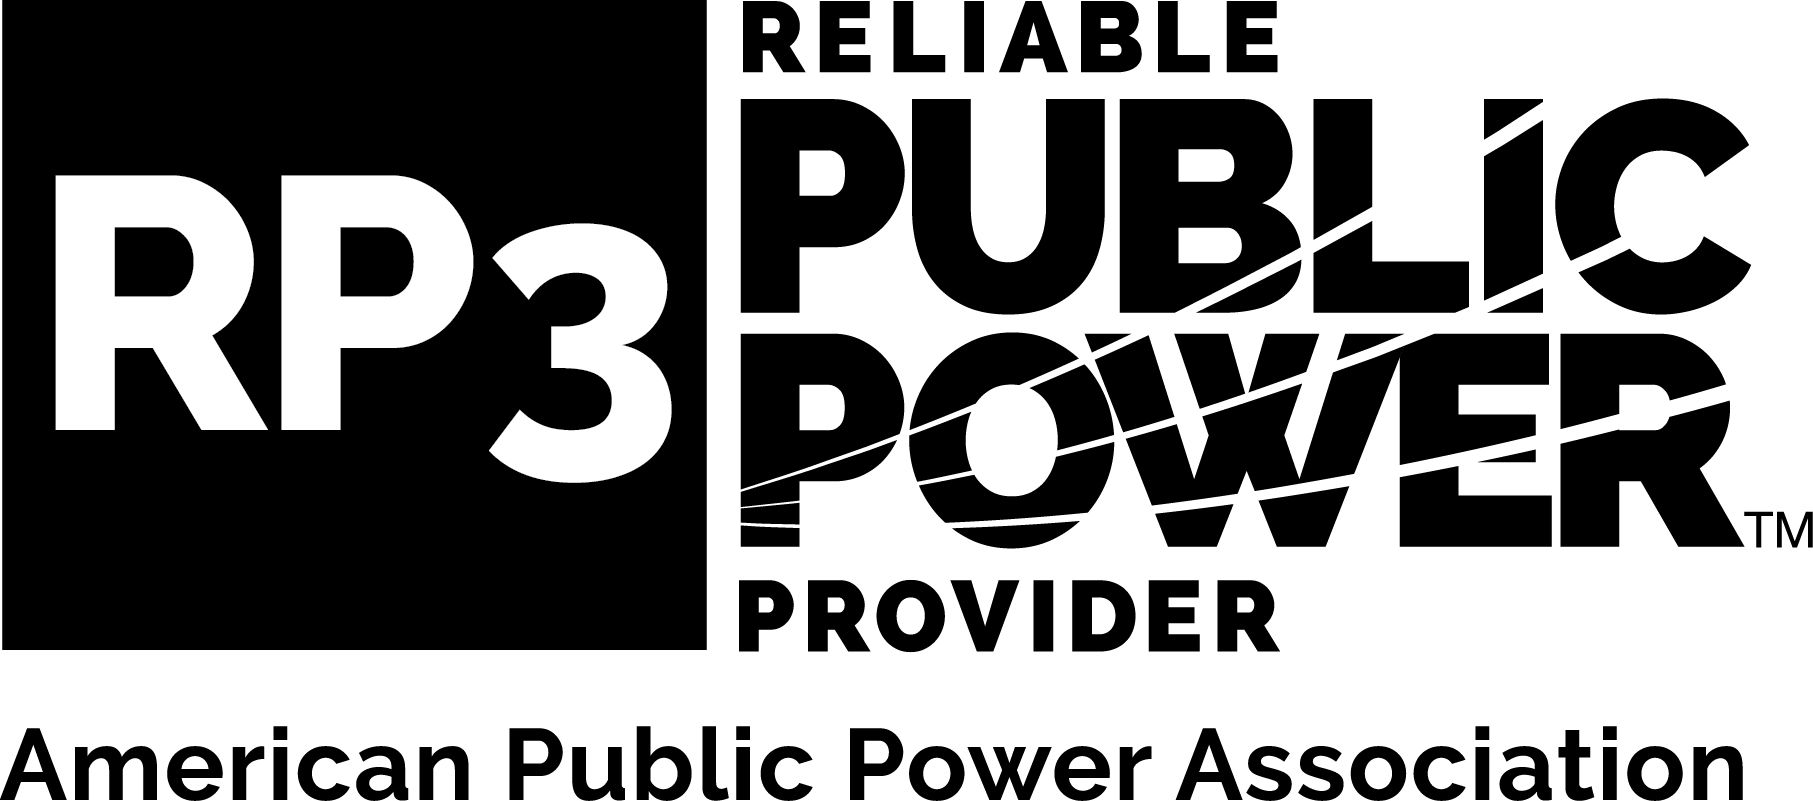 RP3 Full Logo 1c (002)